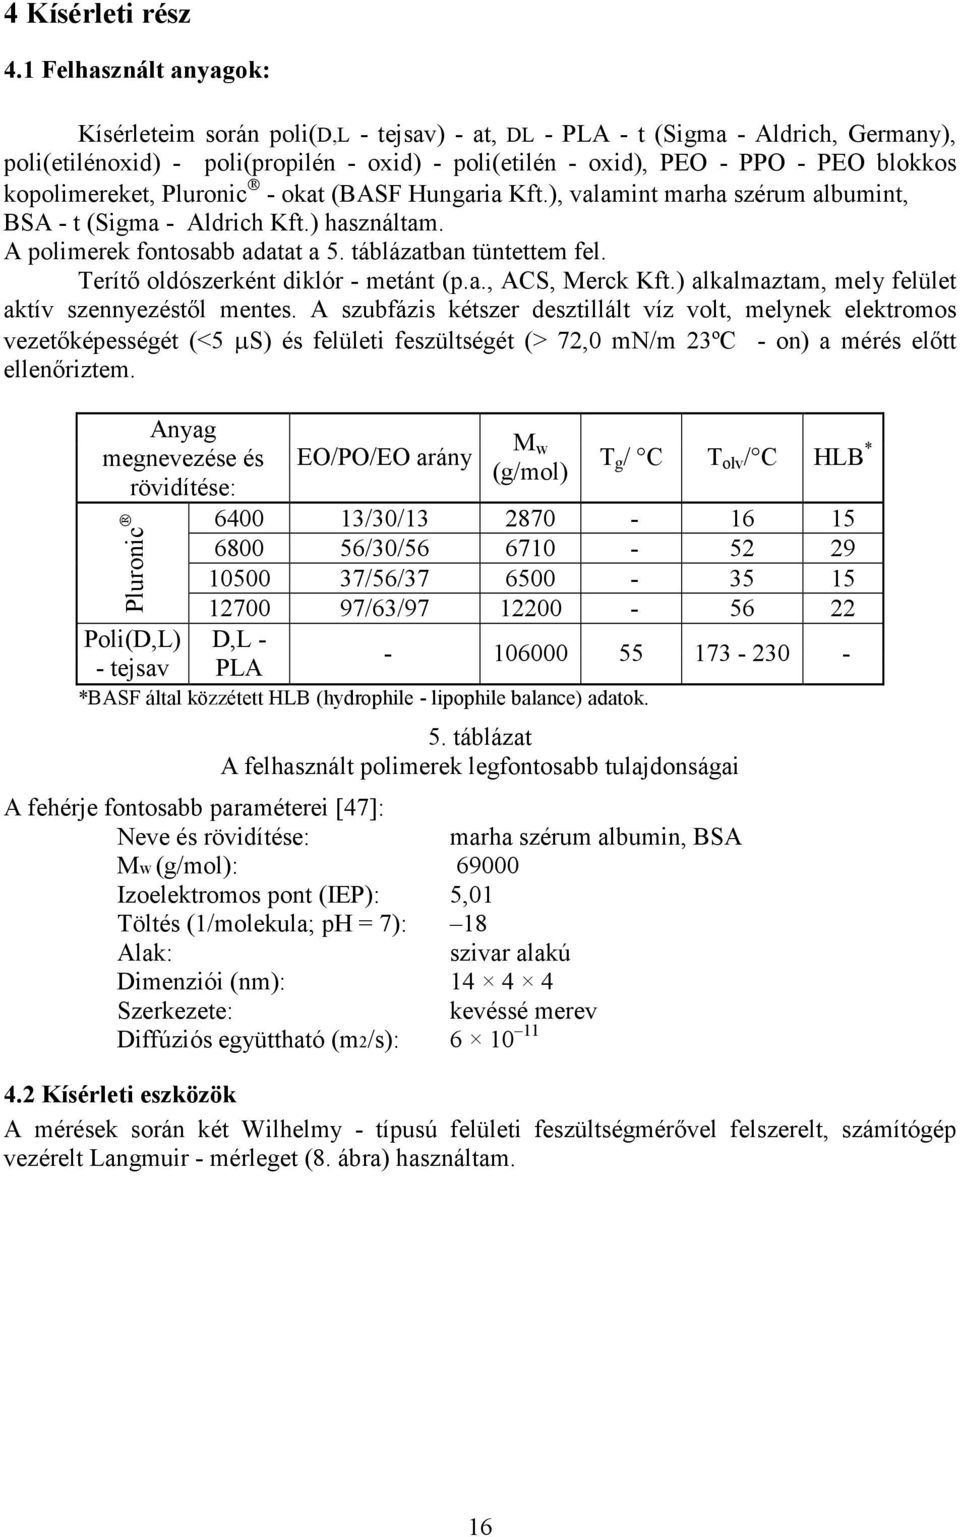 kopolimereket, Pluronic - okat (BASF Hungaria Kft.), valamint marha szérum albumint, BSA - t (Sigma - Aldrich Kft.) használtam. A polimerek fontosabb adatat a 5. táblázatban tüntettem fel.